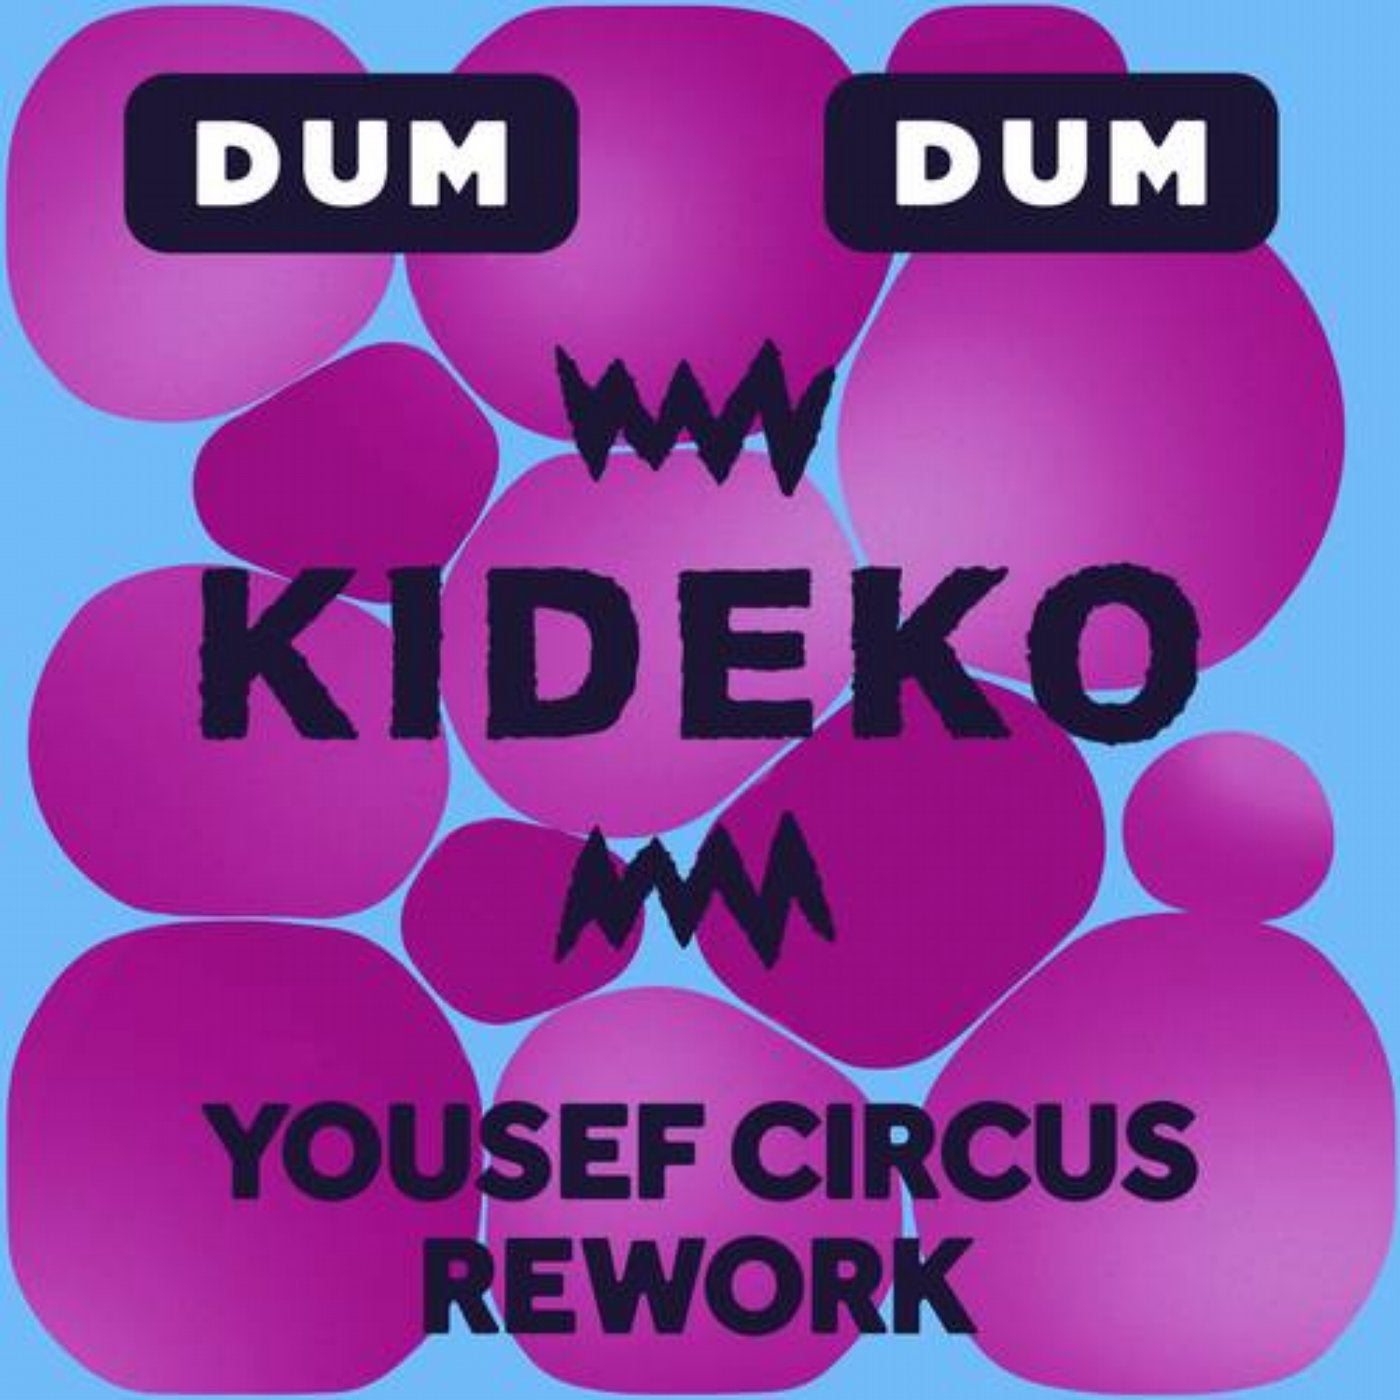 Dum Dum (Yousef Circus Rework)